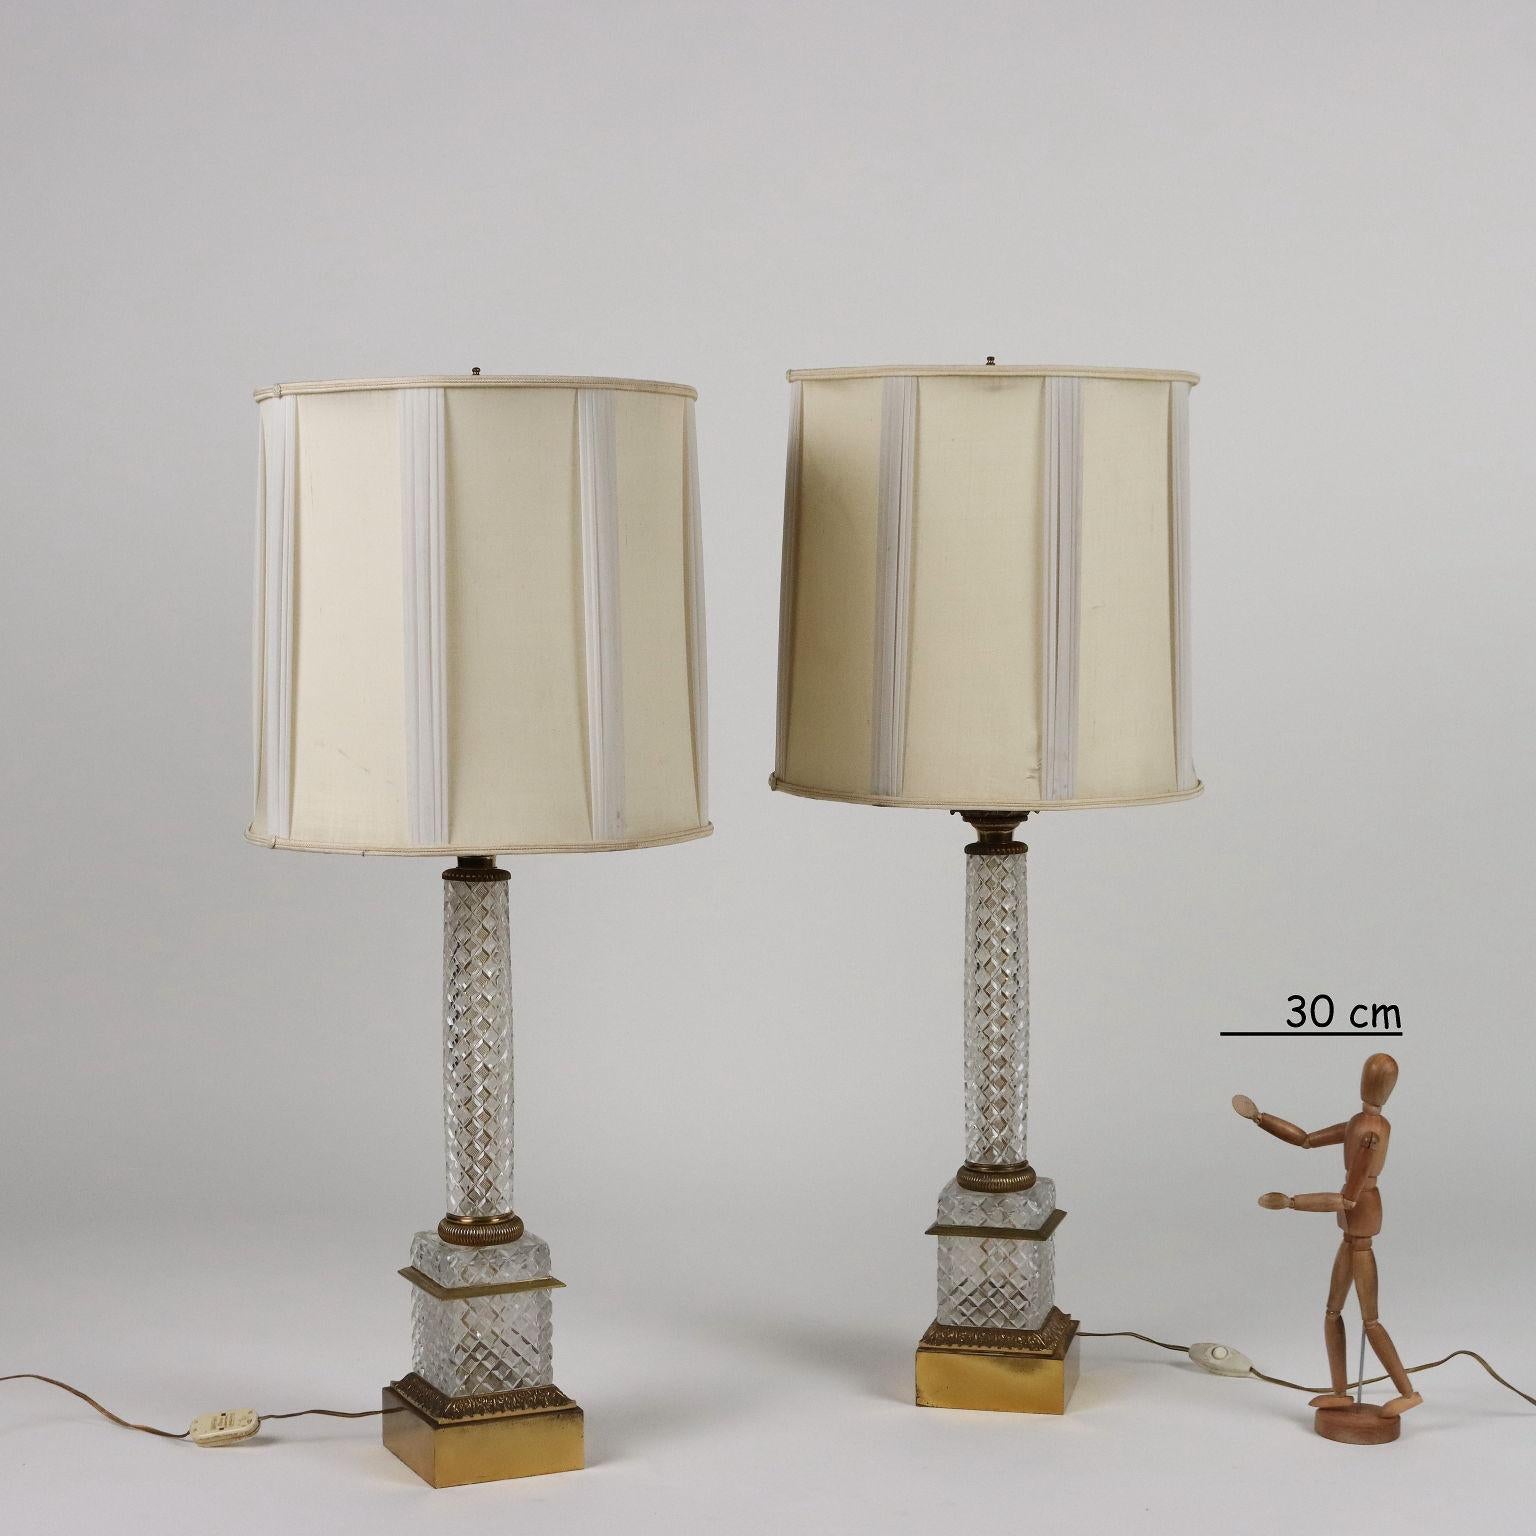 Paire de lampes en cristal taillé et bronze avec abat-jour en tissu. Label adhésif du fabricant sous le culot d'une lampe.